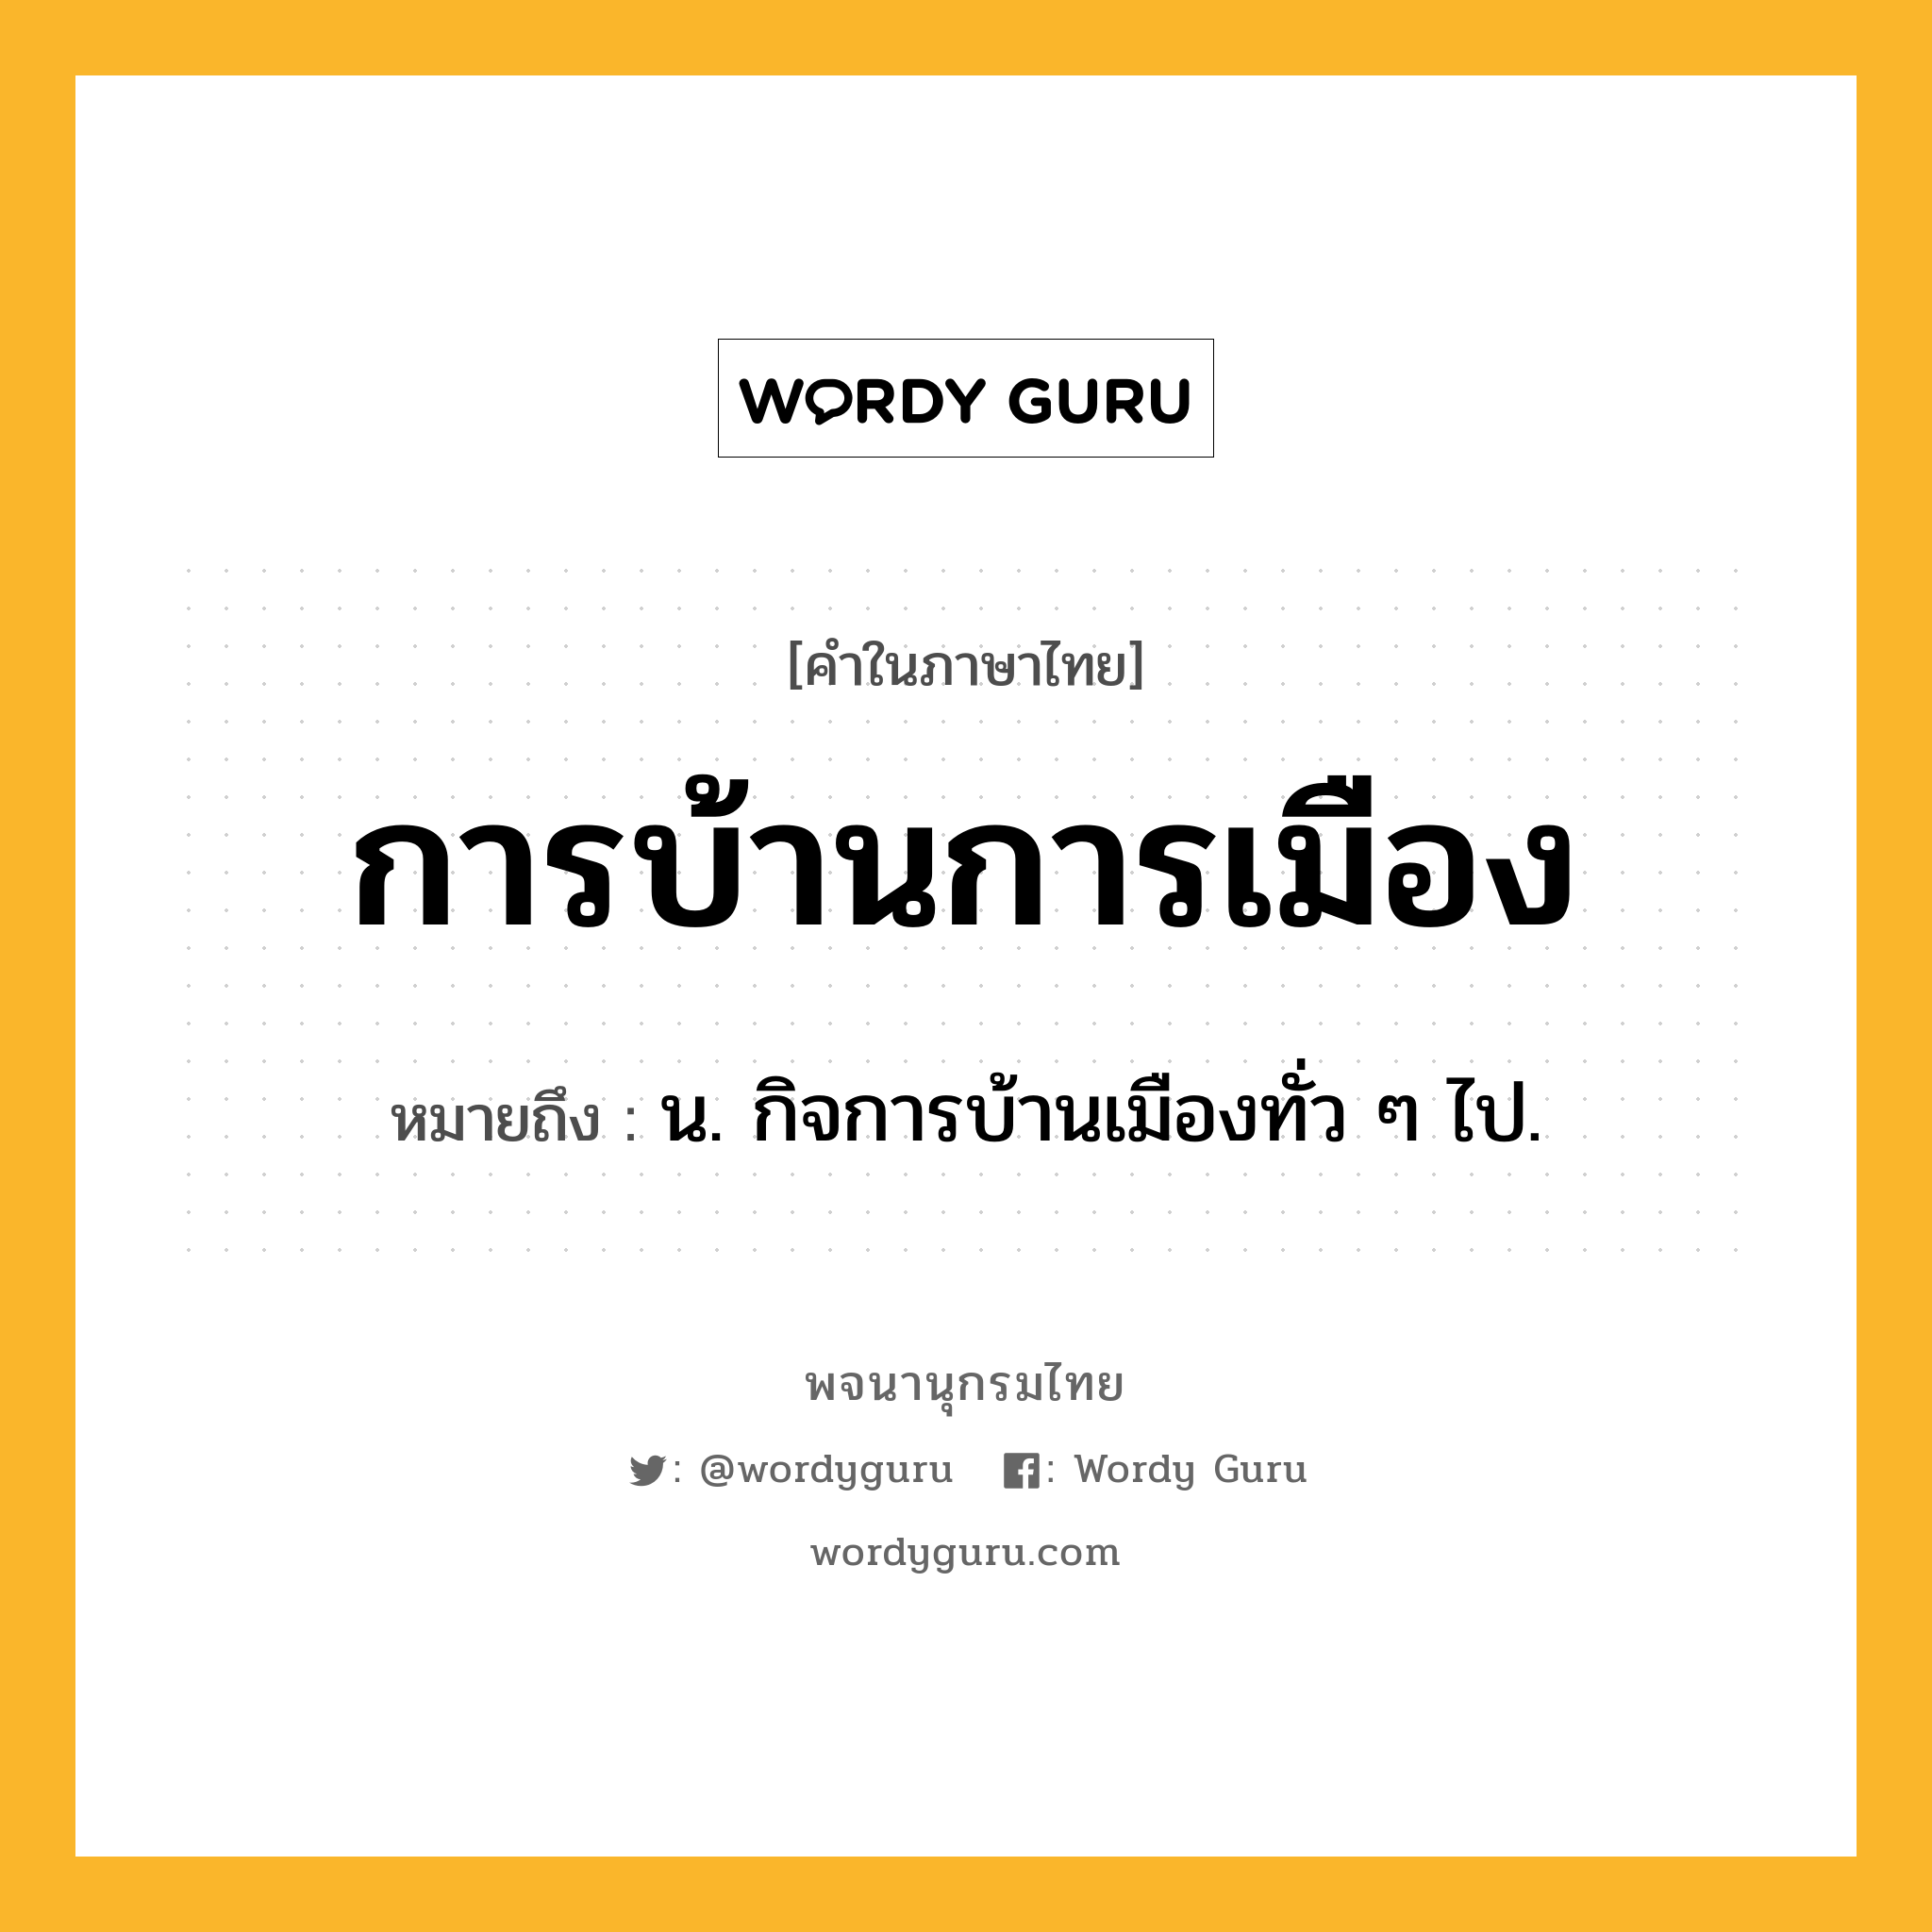 การบ้านการเมือง ความหมาย หมายถึงอะไร?, คำในภาษาไทย การบ้านการเมือง หมายถึง น. กิจการบ้านเมืองทั่ว ๆ ไป.